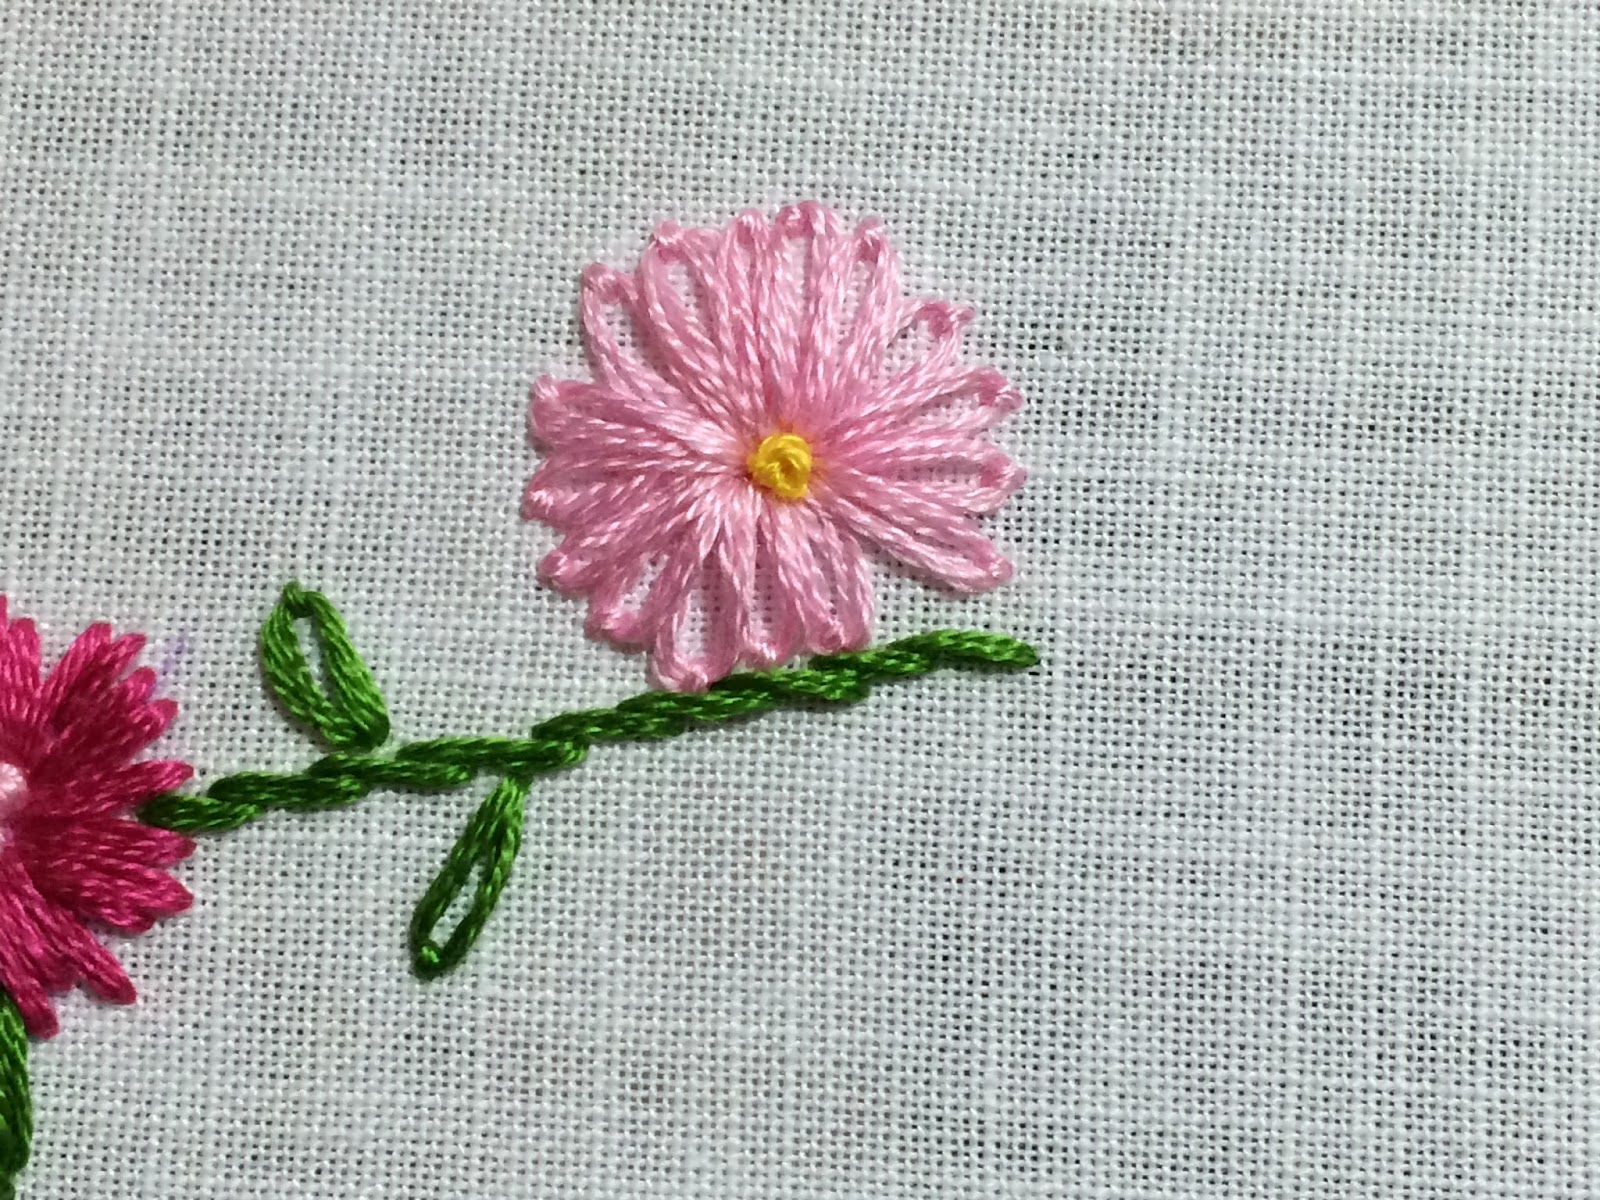 embroidered flower sampler